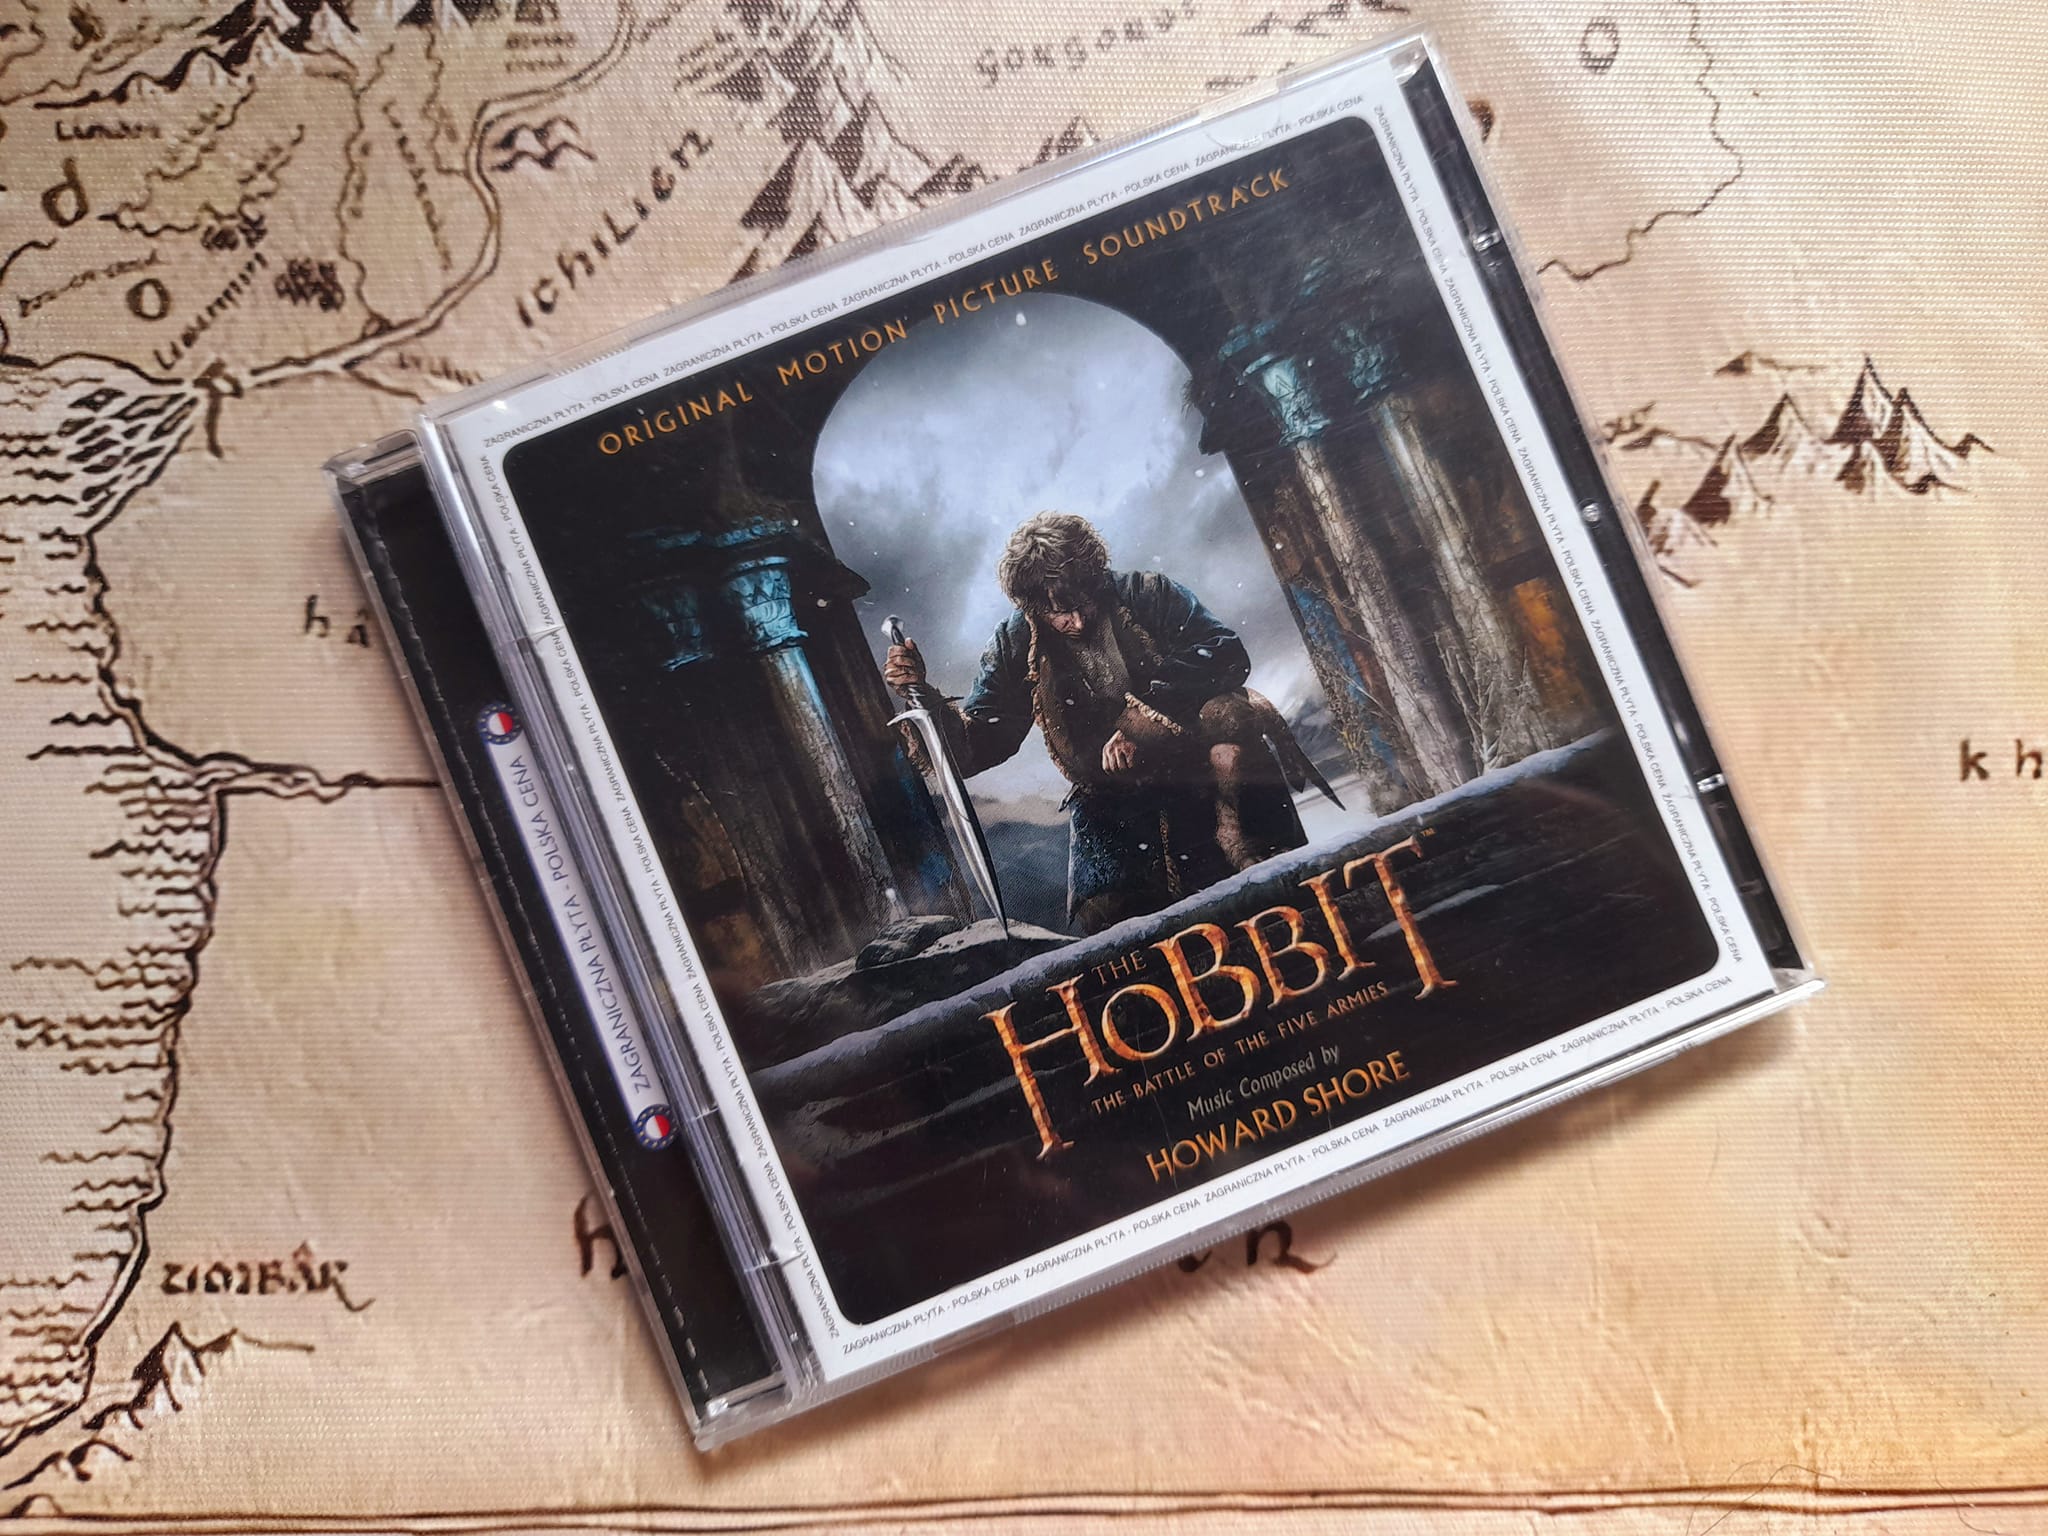 Zabezpieczone: Soundtrack Hobbit Bitwa Pięciu Armii